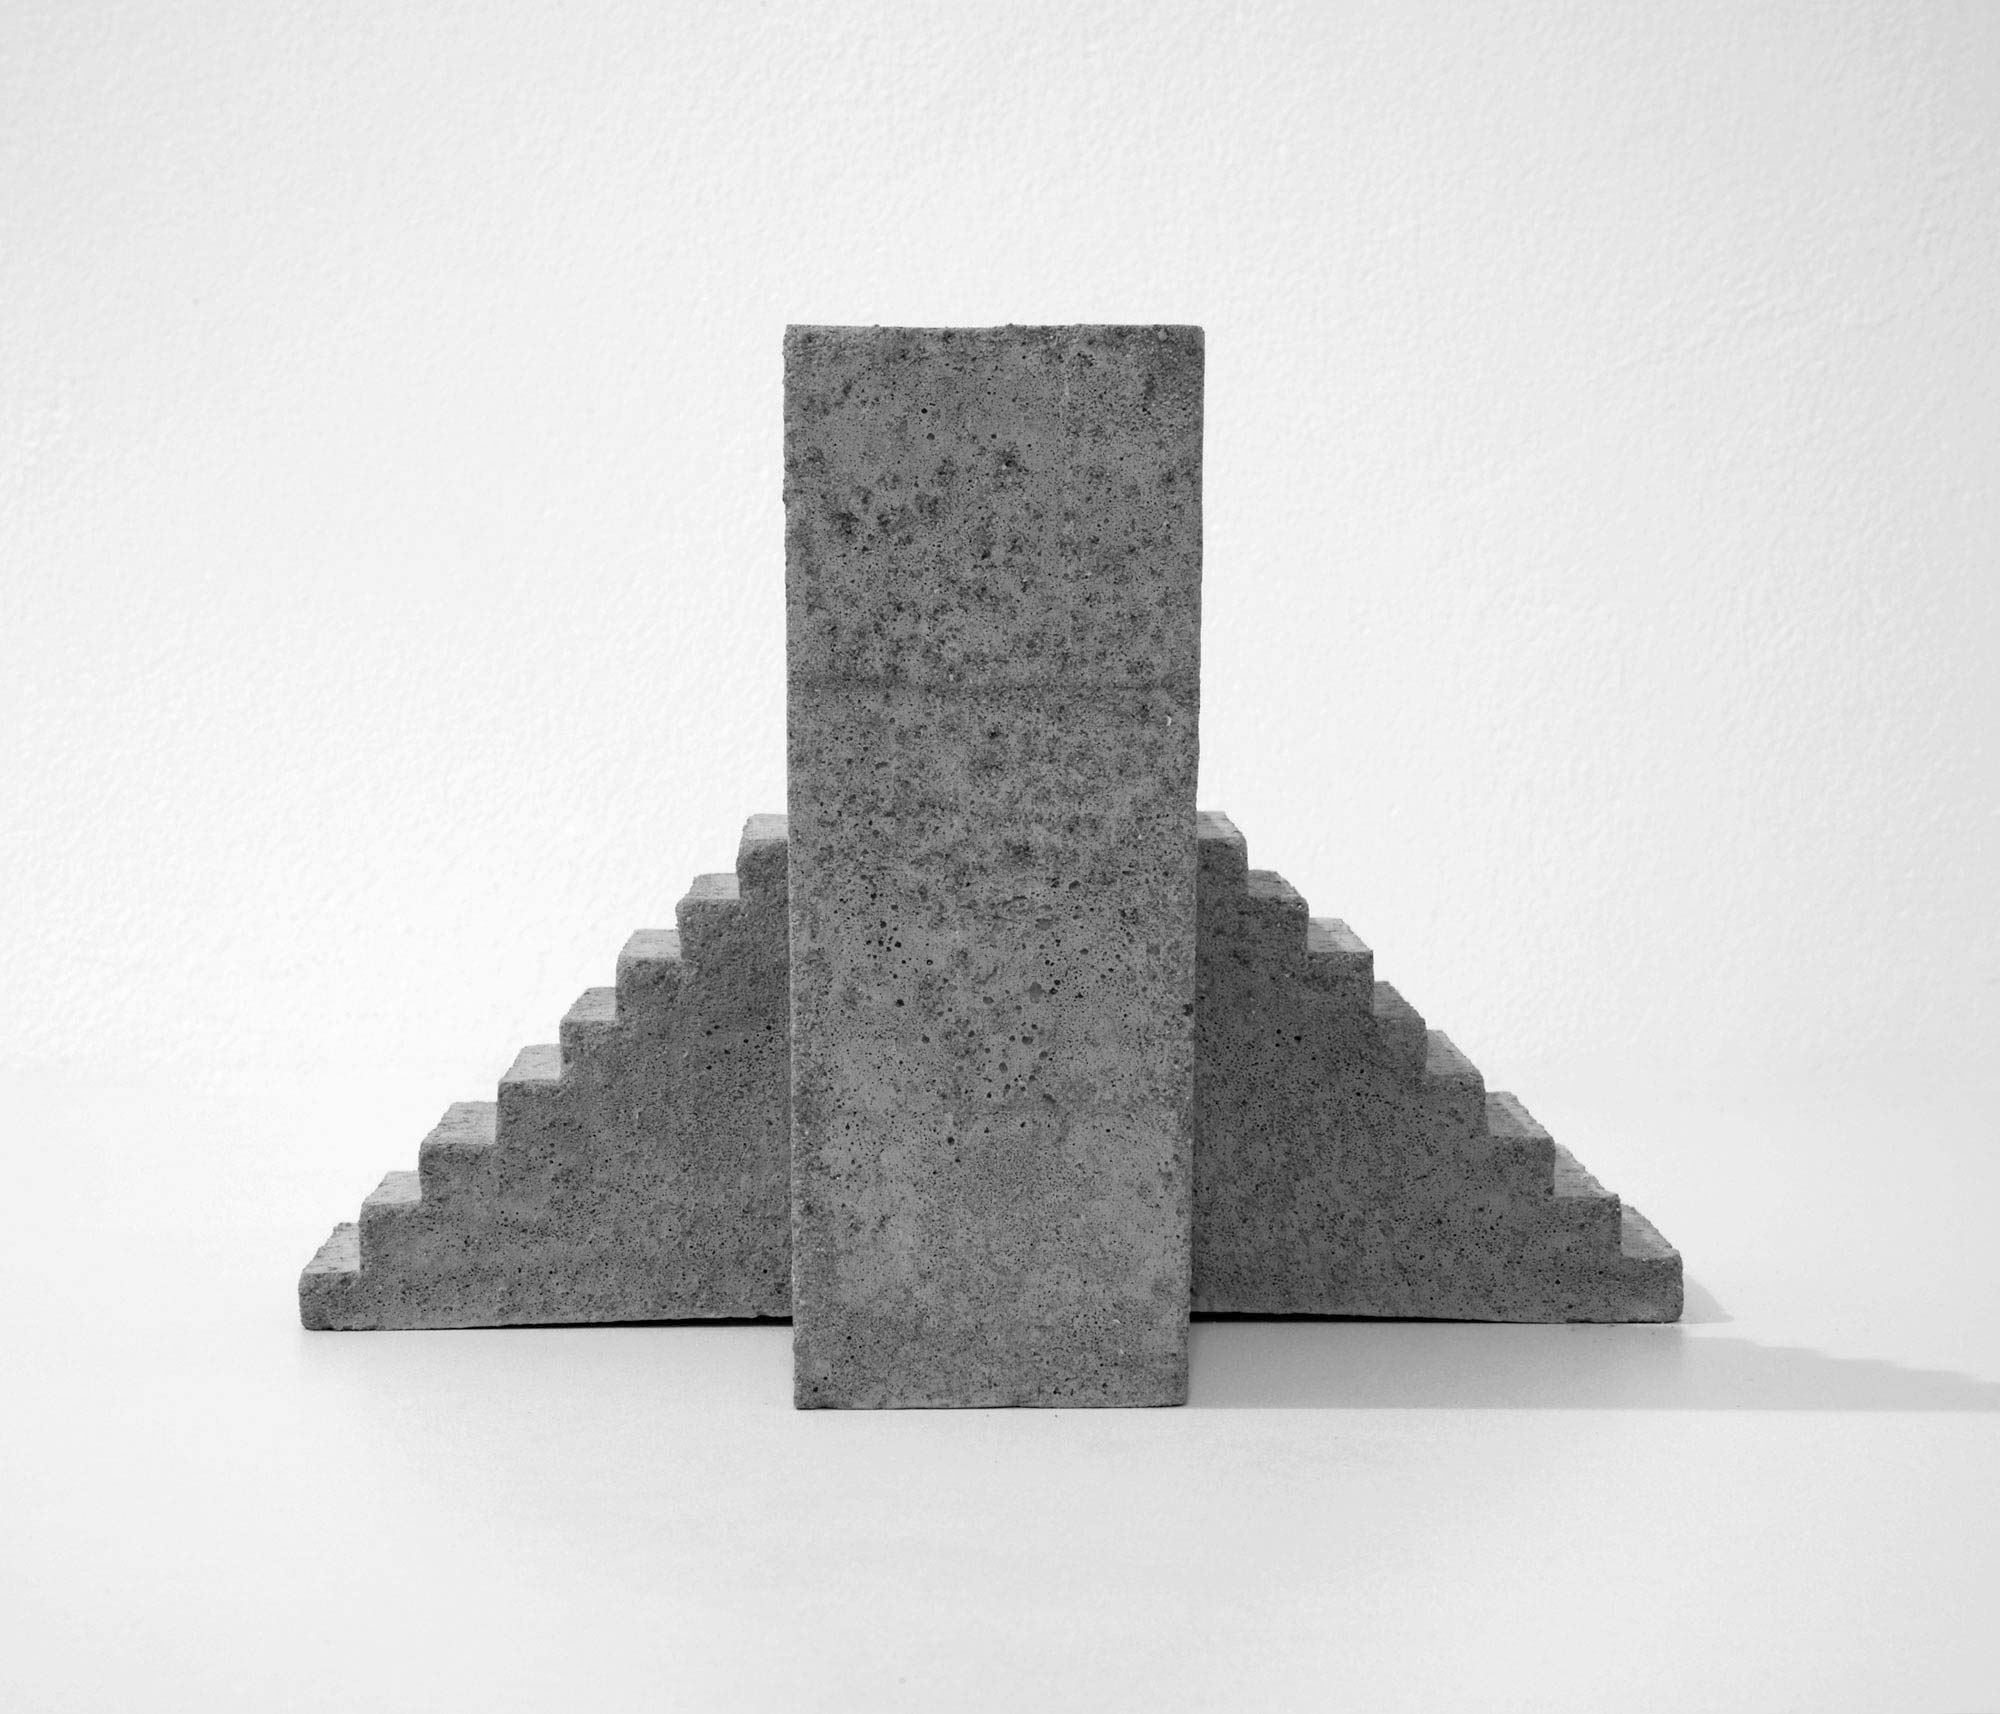 mattia listowski art design objet décoration sculpture béton moulage micro architecture maquette escalier double simple édition limitée numérotée signée paris bruxelles 2019